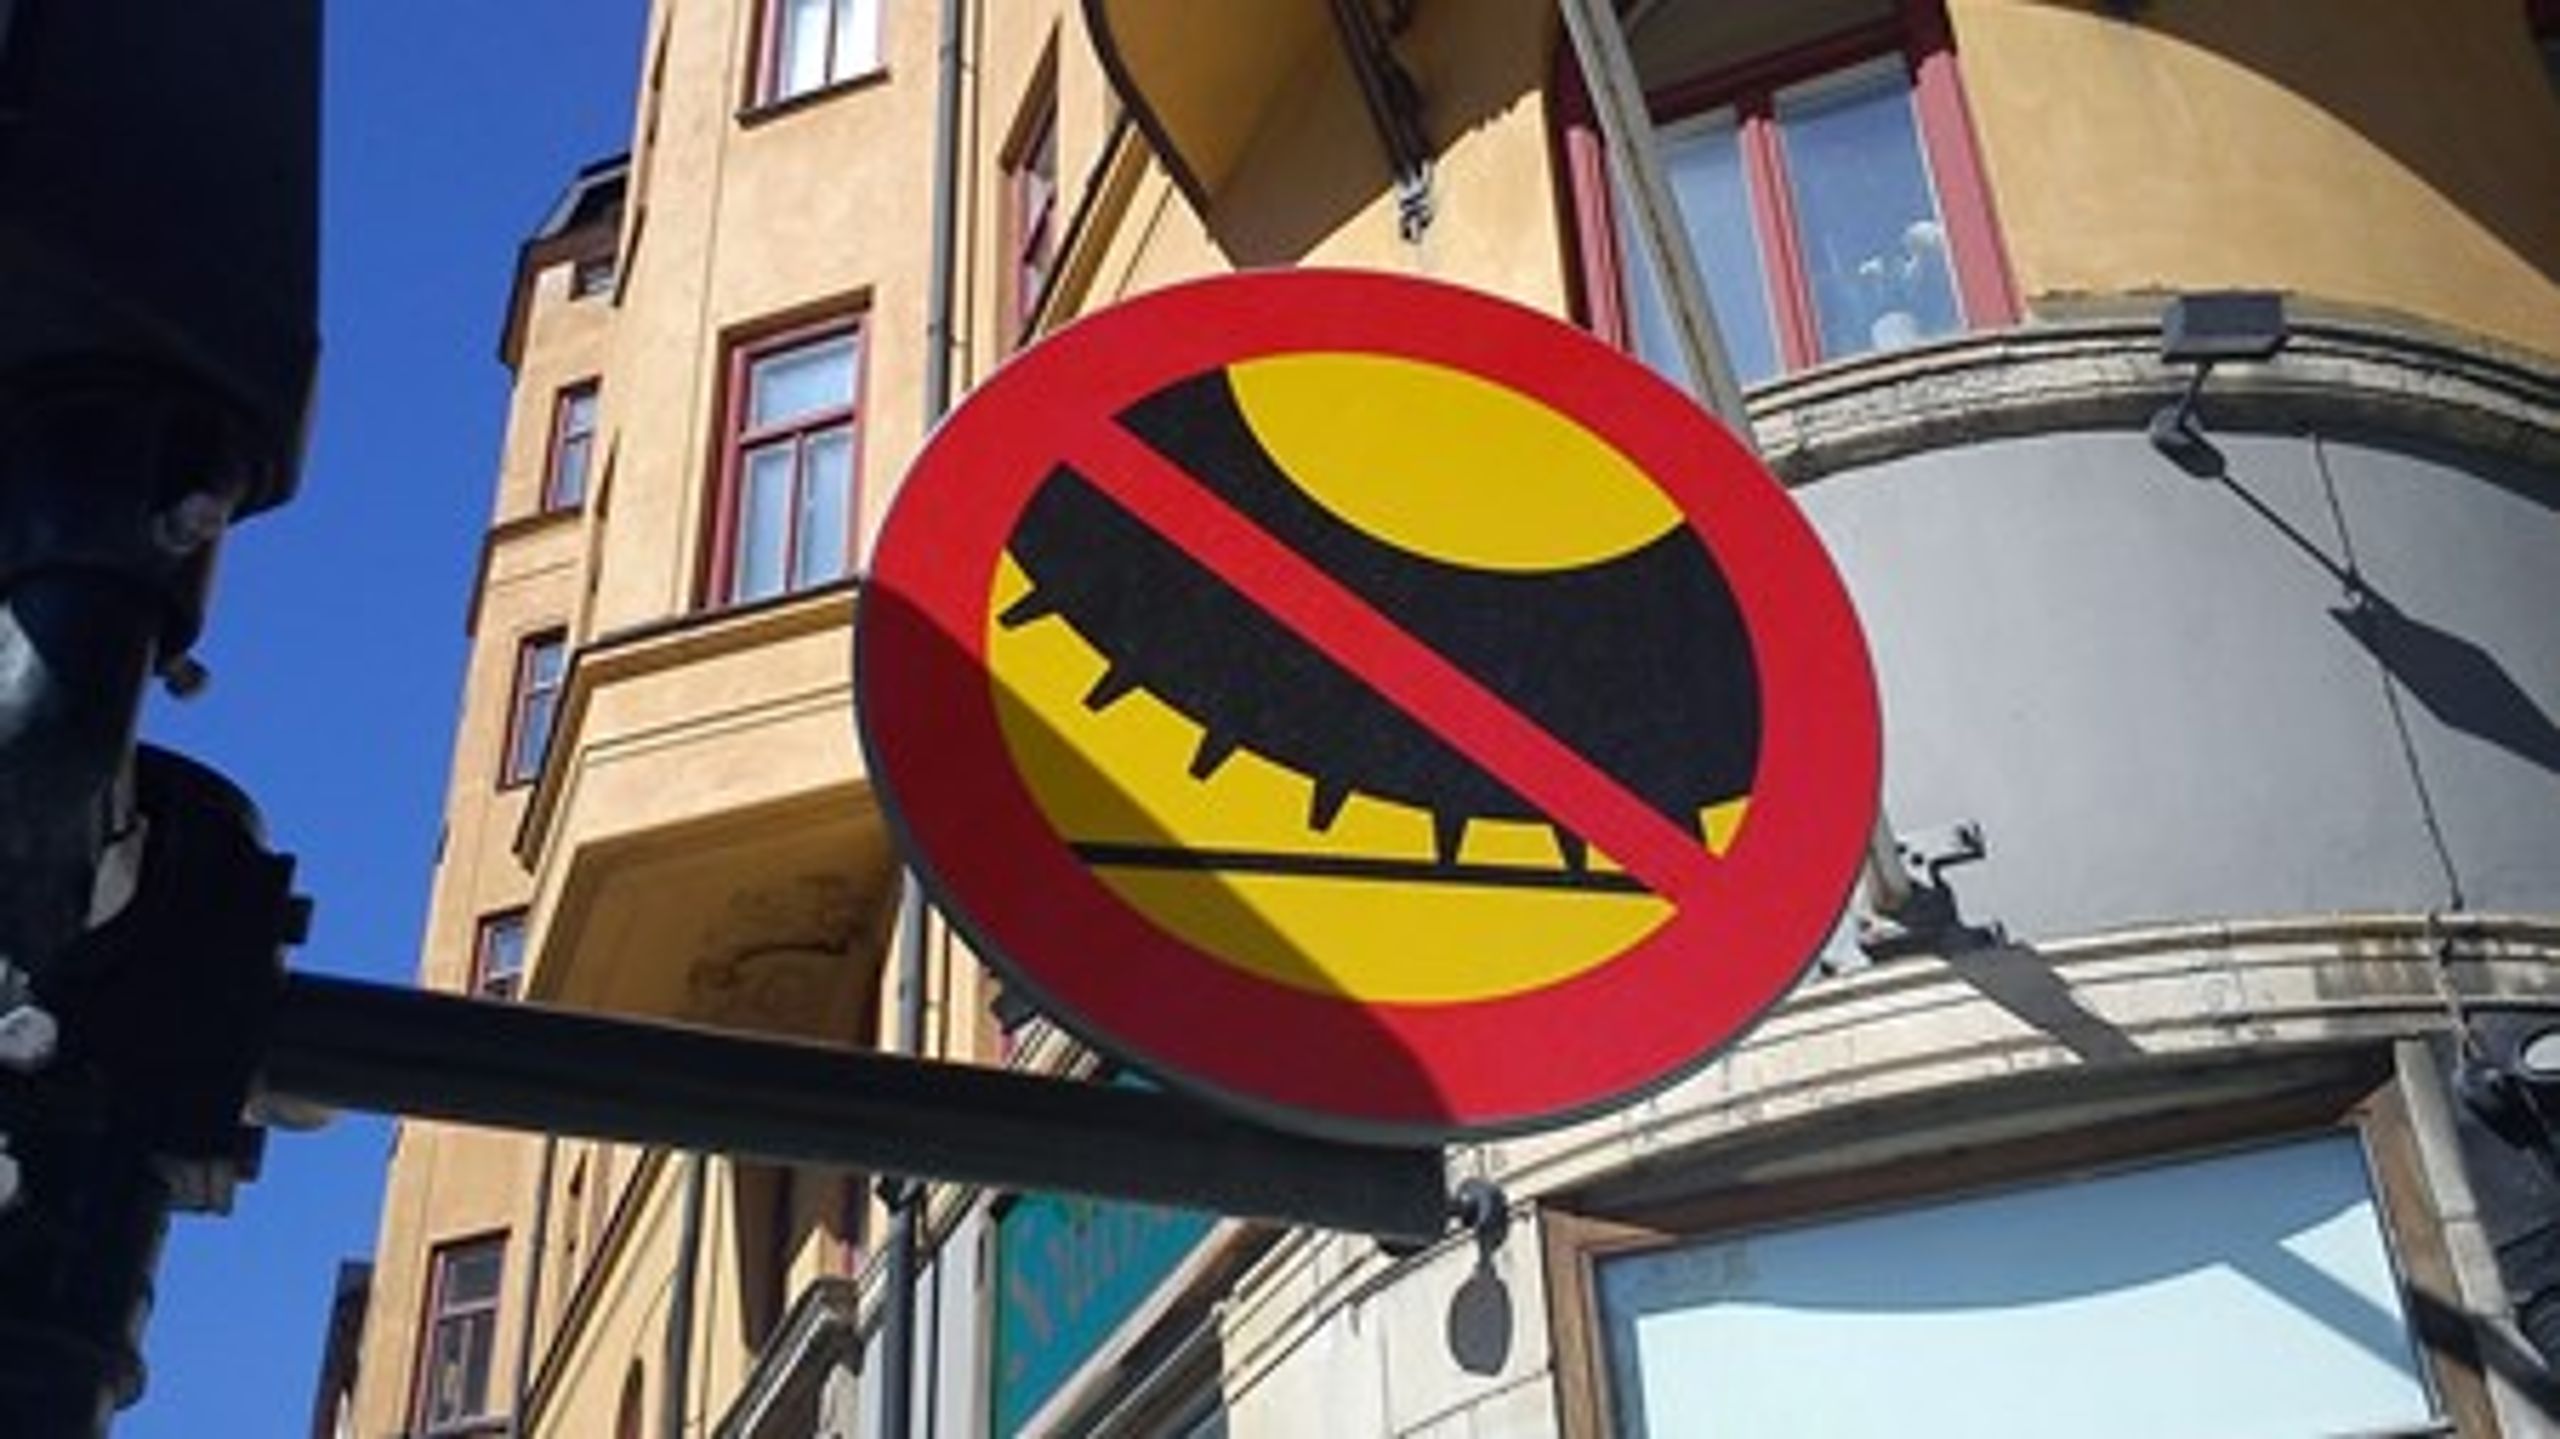 <b>Förbudet mot dubbdäck</b> på Hornsgatan i Stockholm räddar varje år livet på 3,6 personer. En skatt på dubbdäck i hela Stockholms innerstad skulle rädda livet på ytterligare tre personer per år, enligt utredningen.